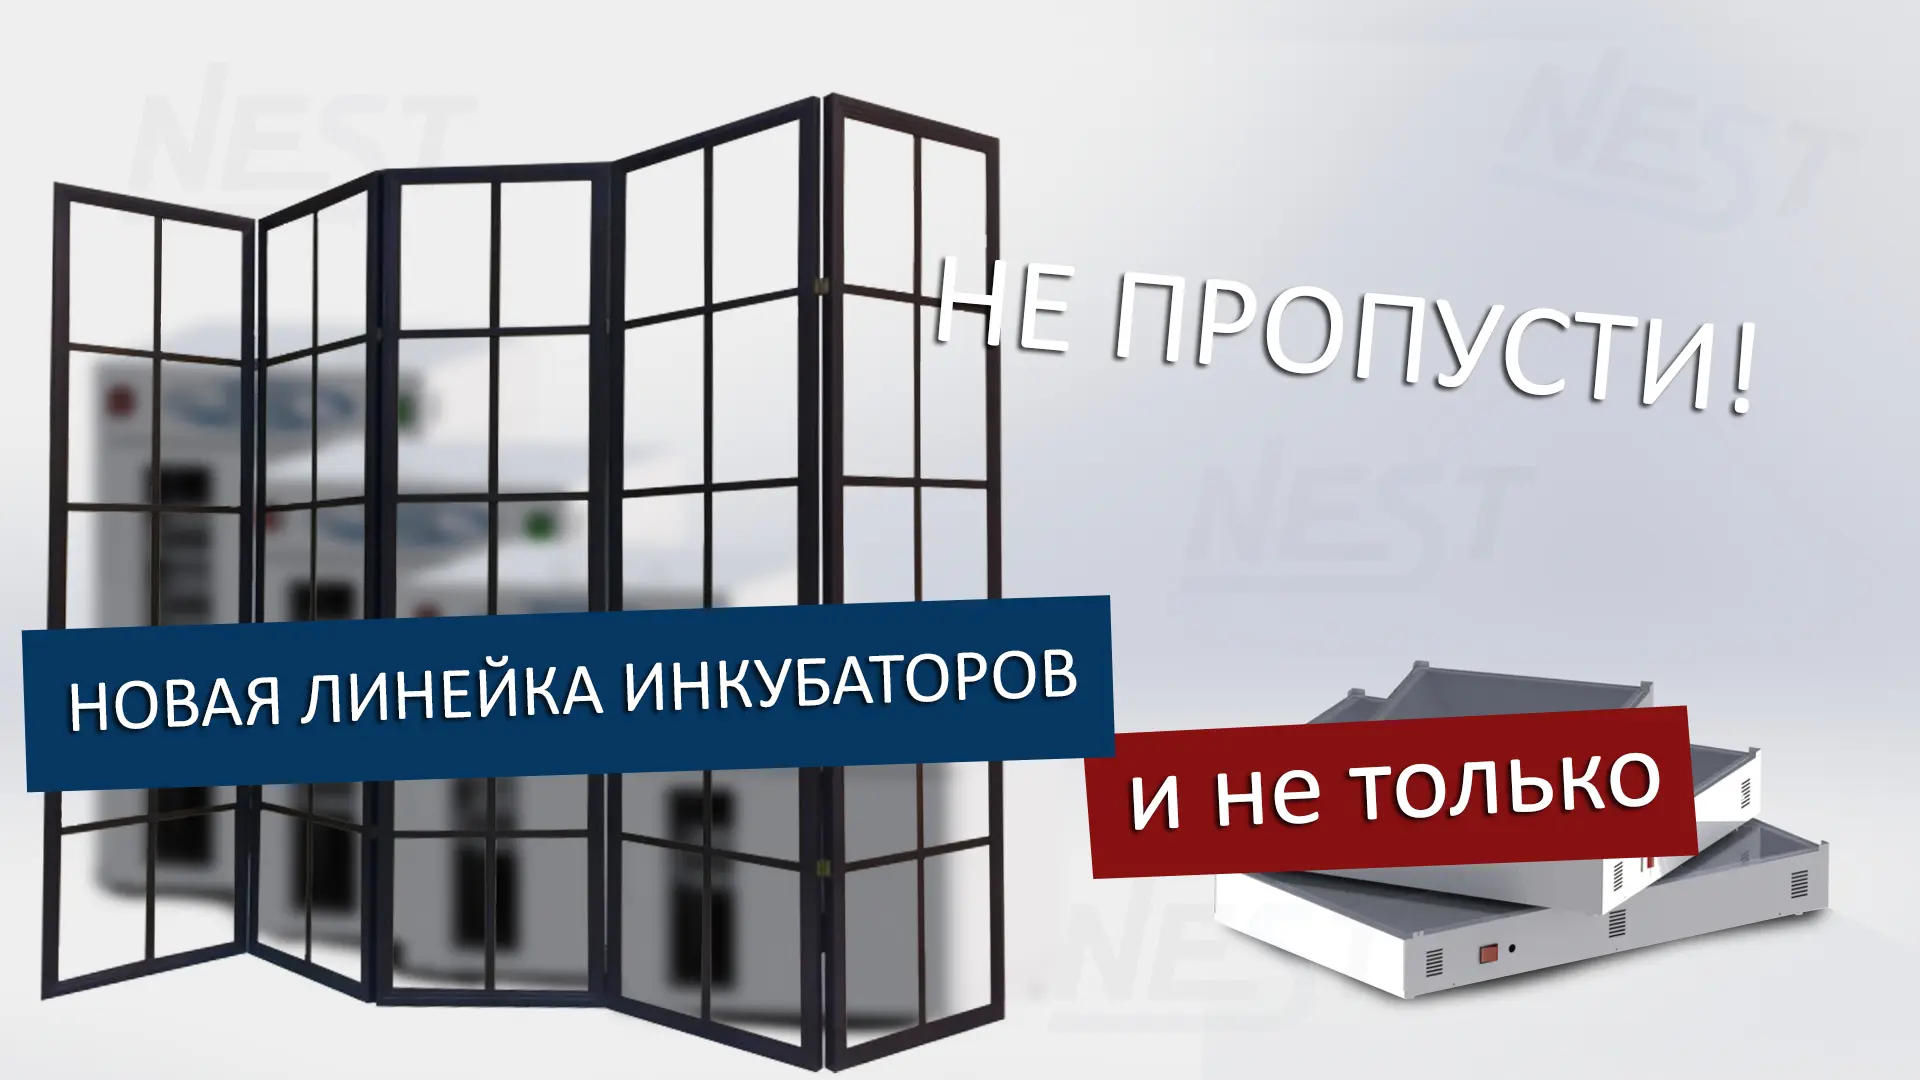 You are currently viewing Новая бюджетная линейка инкубаторов!